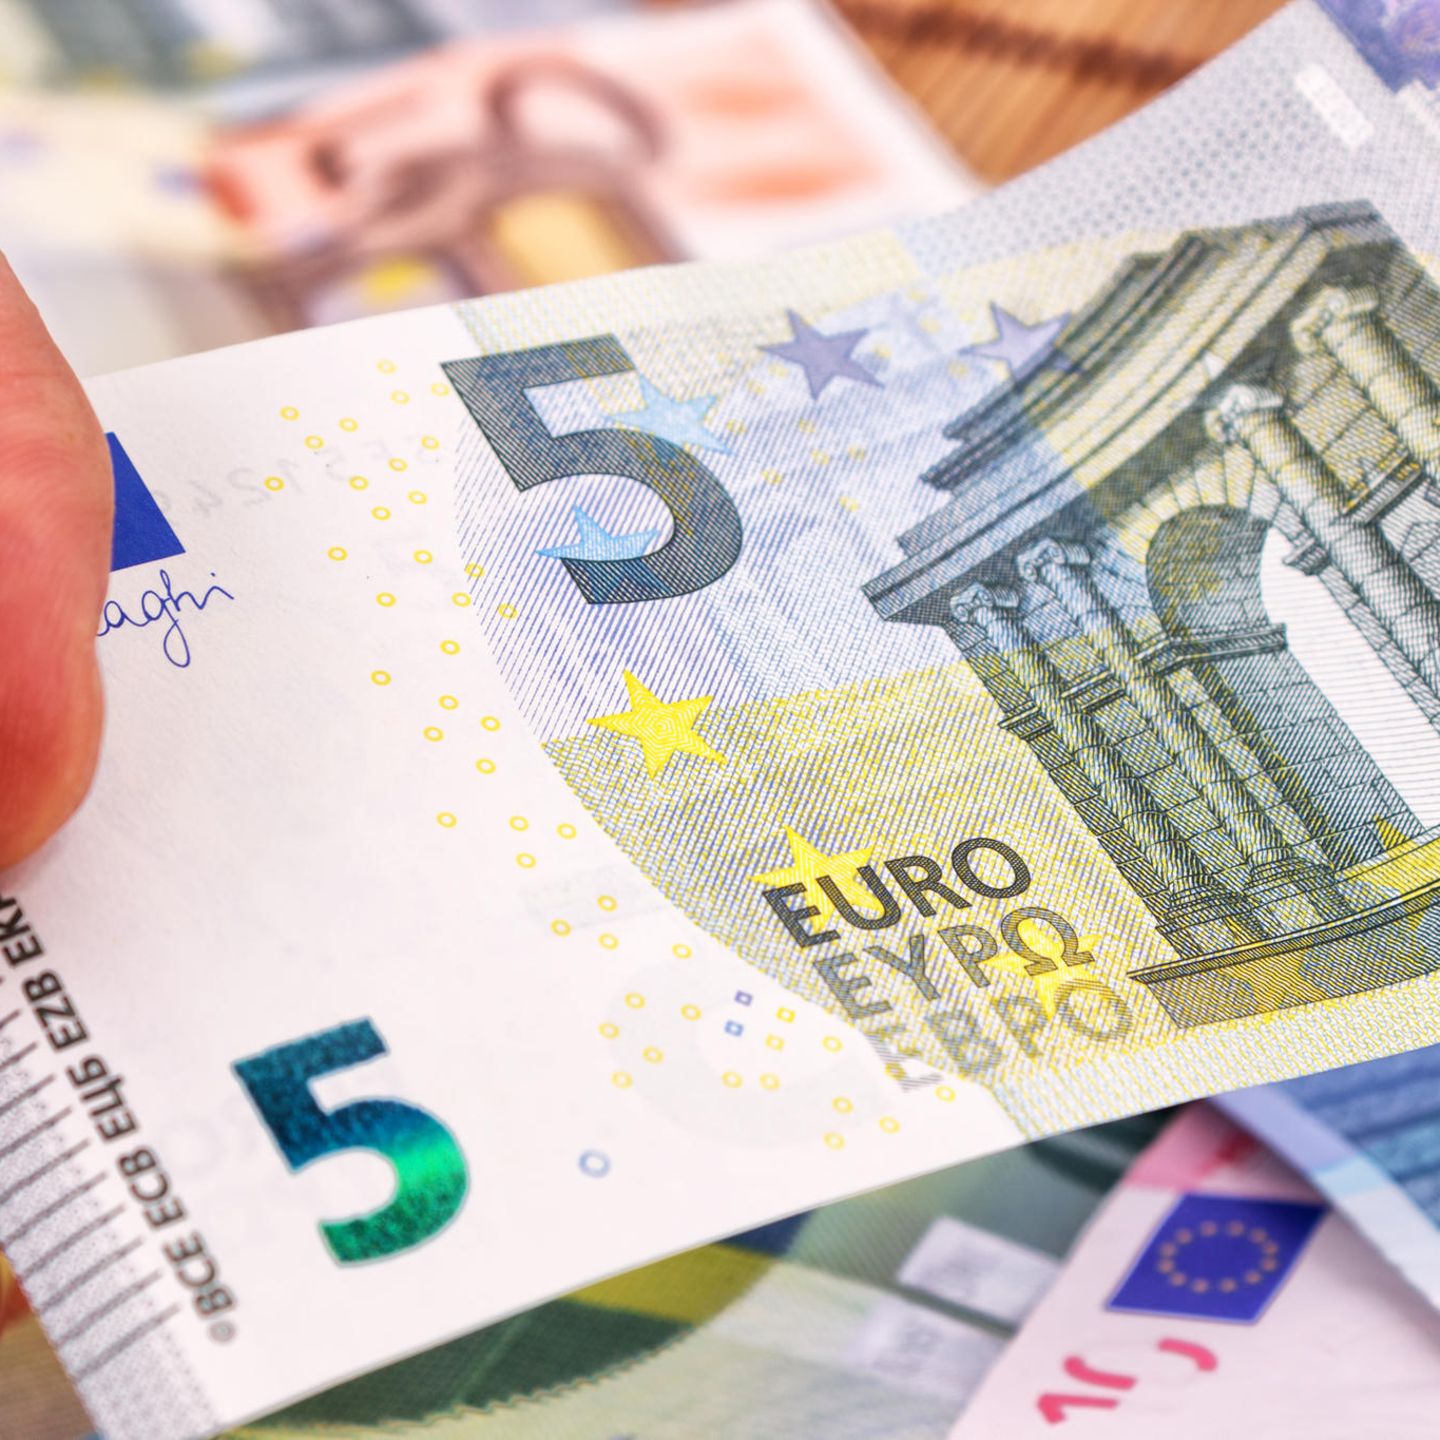 Dieser 5 Euro Schein Ist 500 Euro Wert Habt Ihr Ihn Auch Im Portemonnaie Brigitte De